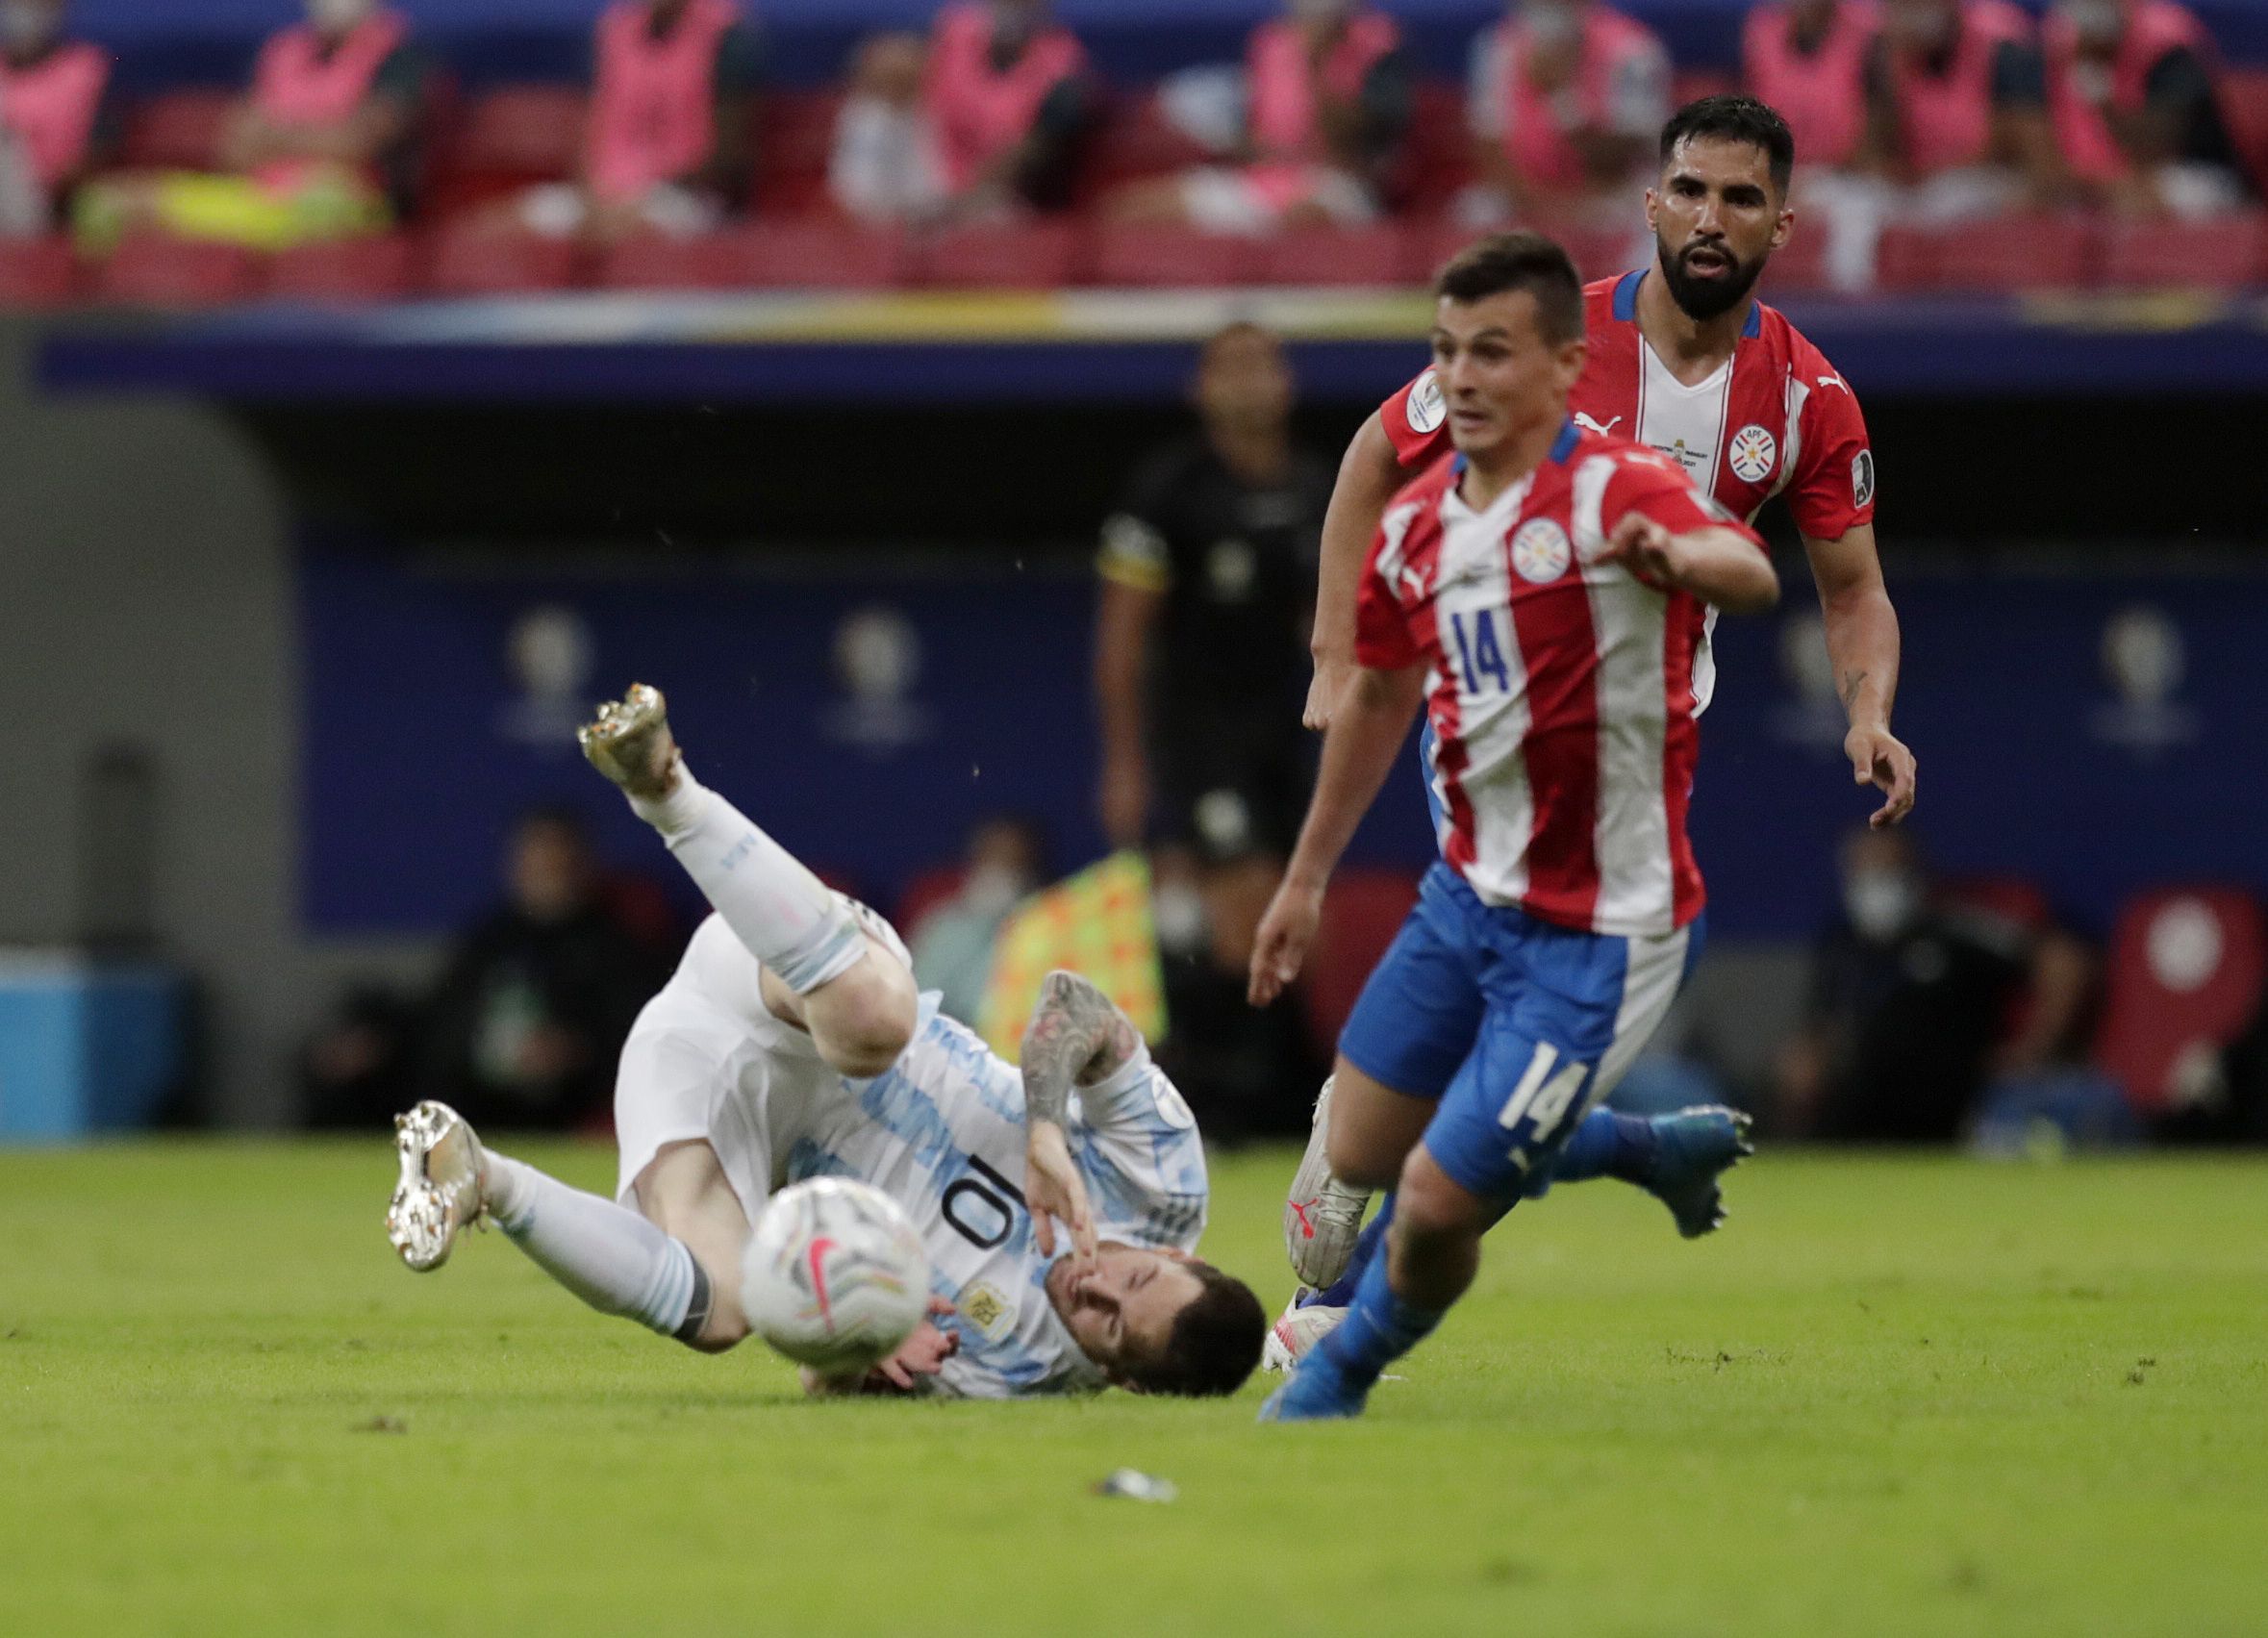 Cubas le comete infracción a Messi, quien con su gambeta inquietó (REUTERS/Ueslei Marcelino)